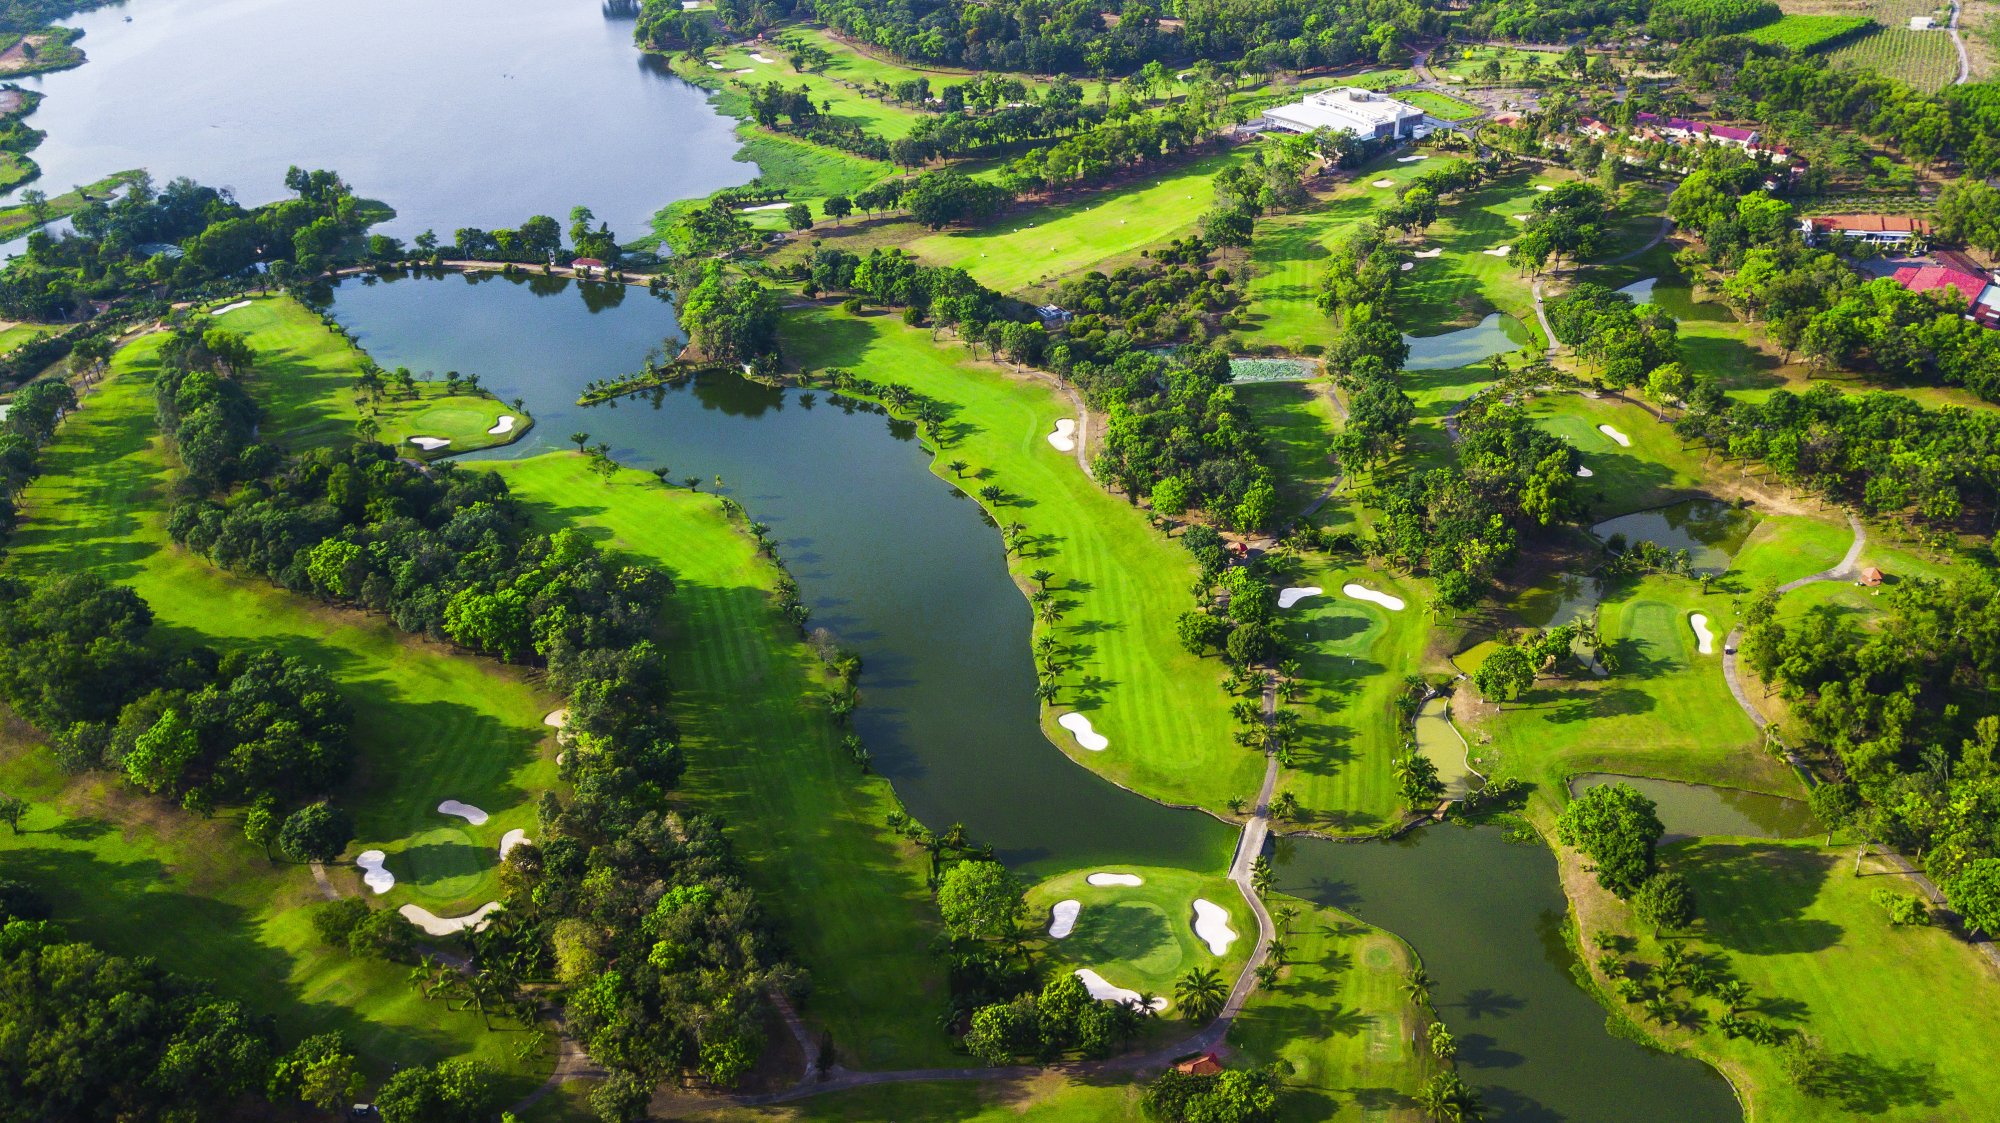 Sân golf Đồng Nai: Điểm đến lý tưởng dịp cuối tuần